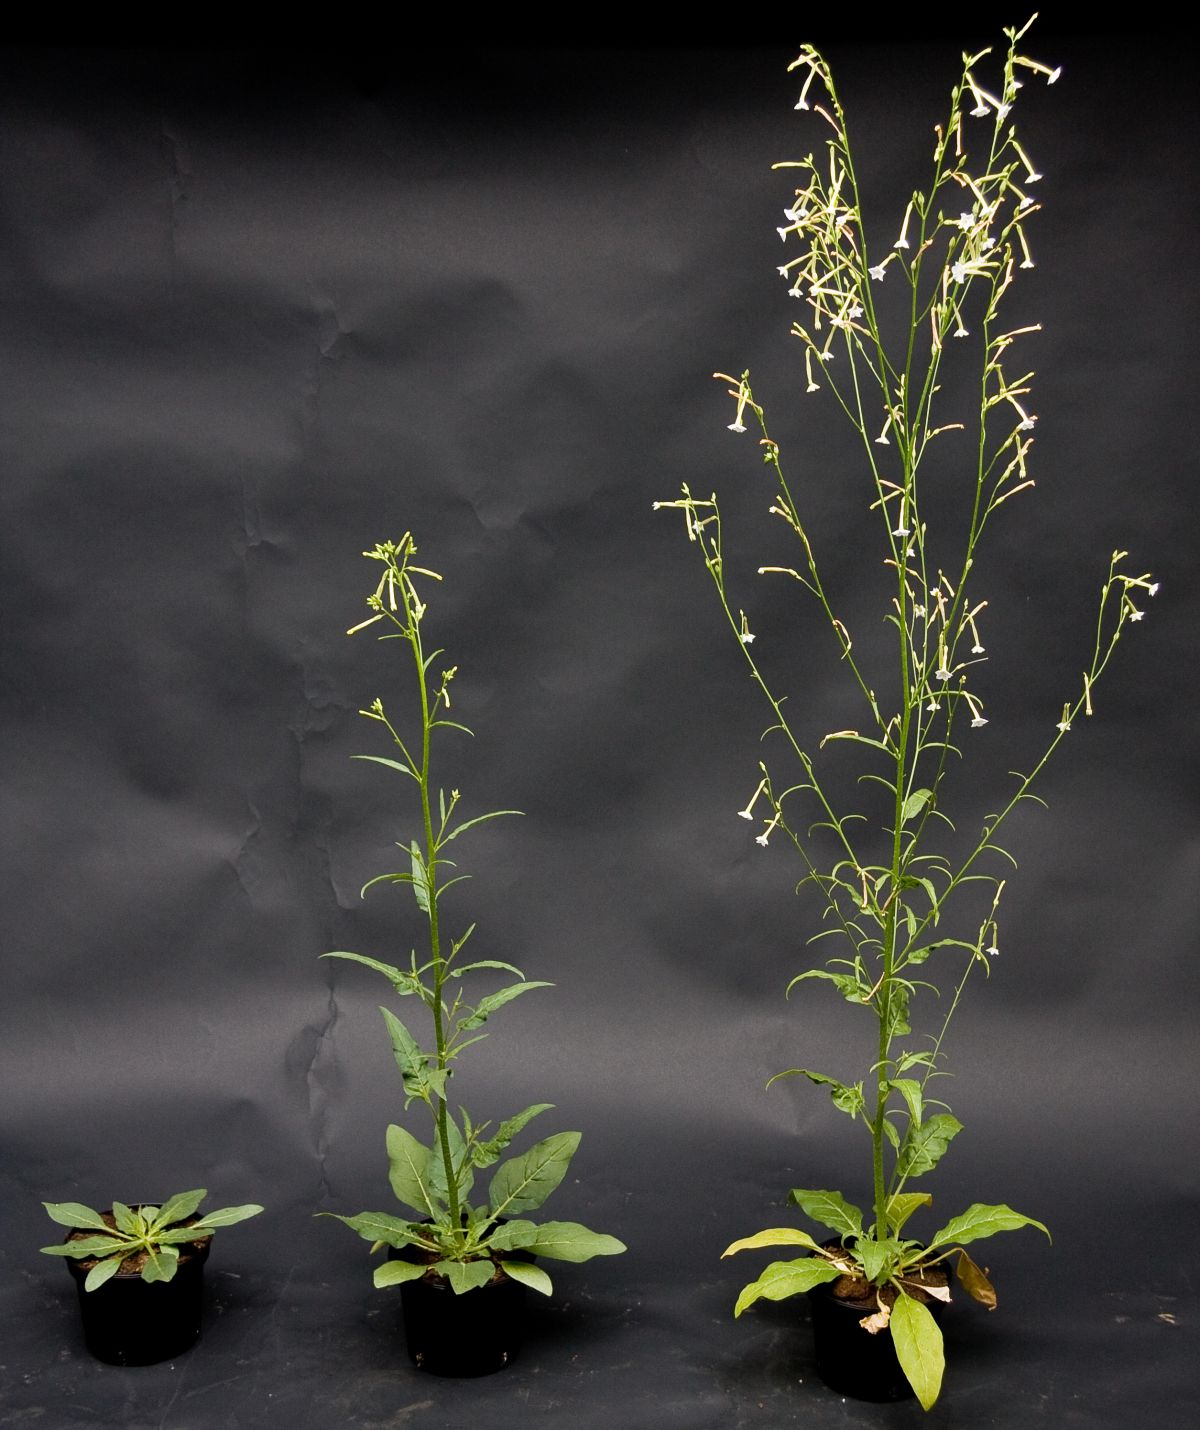 Eine Studie konnte zeigen, dass die Verteidigung vom Entwicklungsstadium der Pflanzen abhängt. Hier abgebildet: Drei unterschiedliche Entwicklungsstadien der Versuchspflanze Nicotiana attenuata.